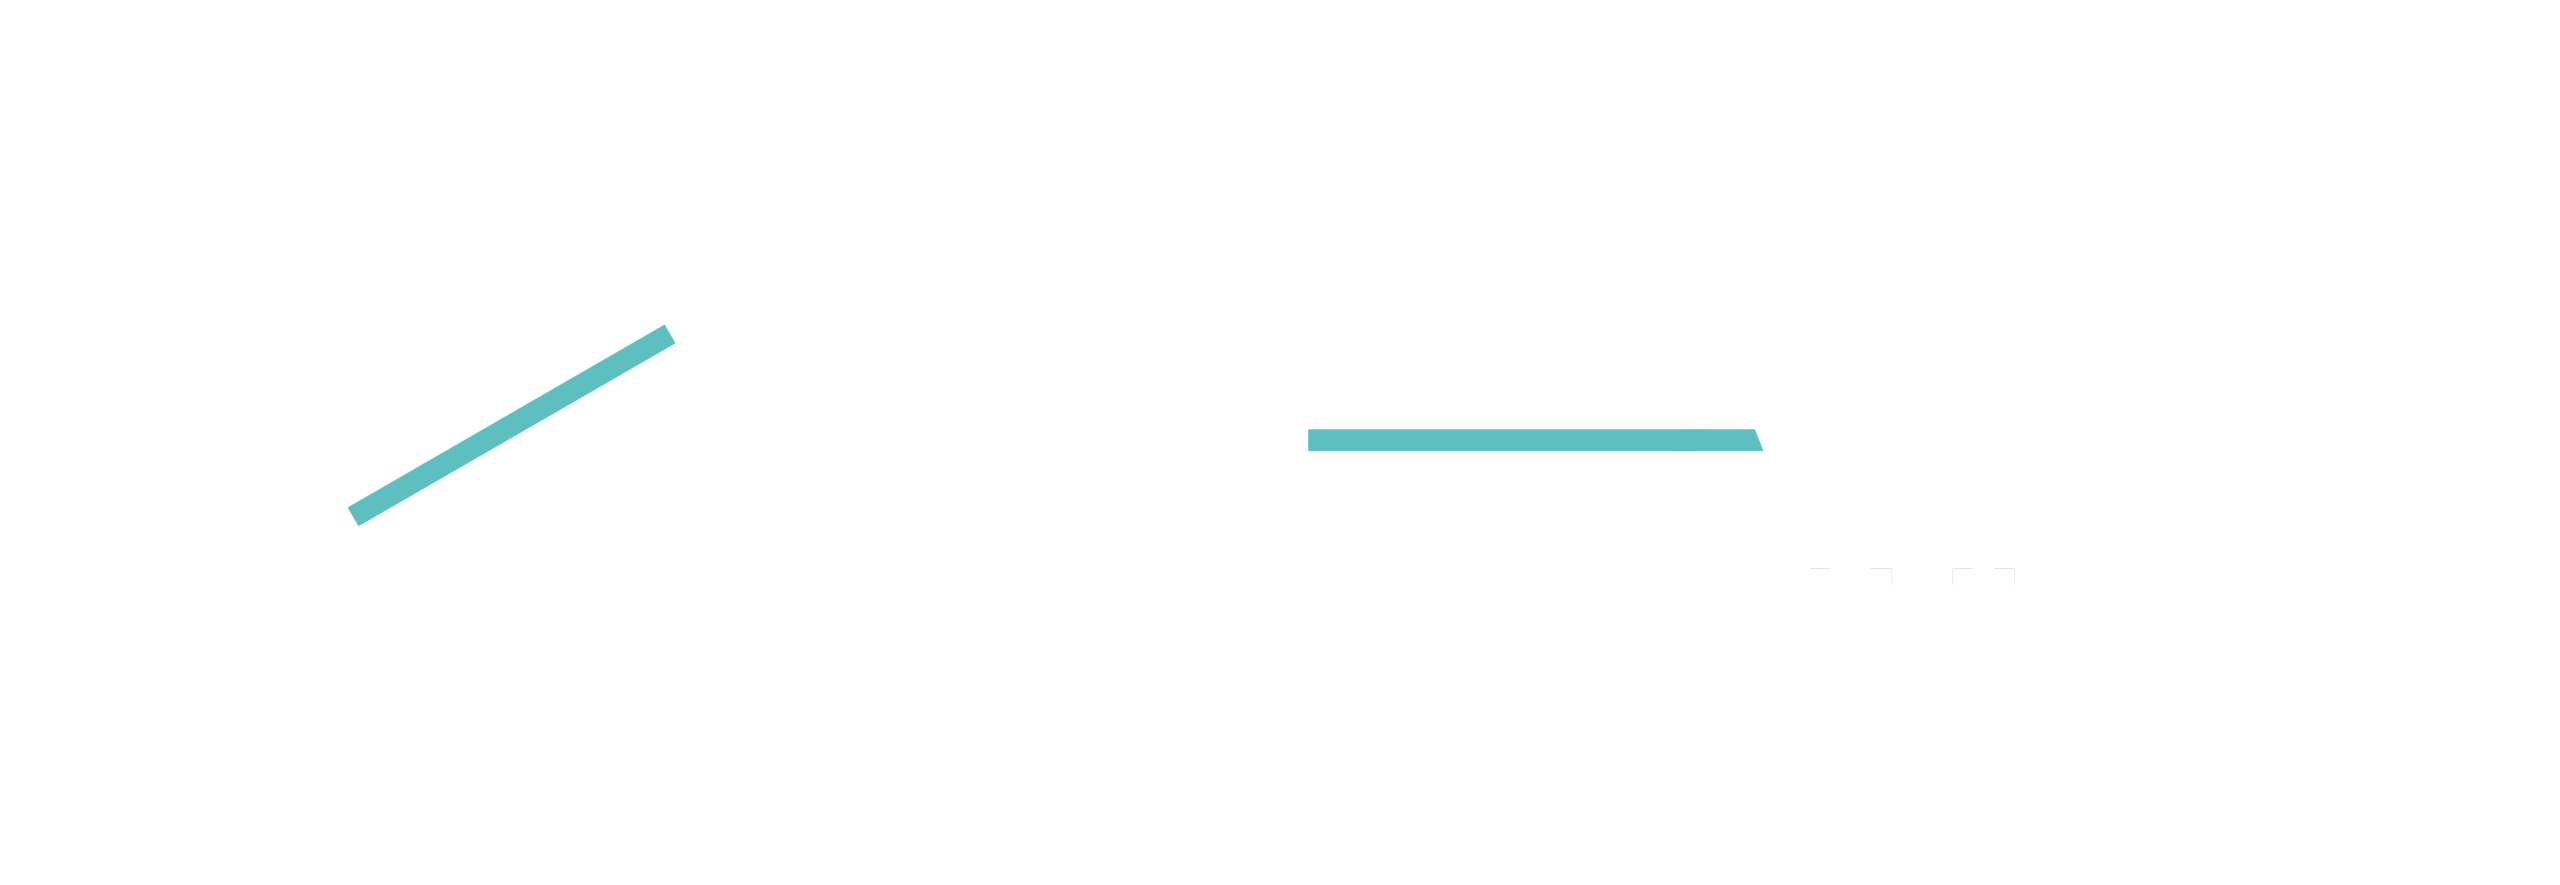 3Beam-05